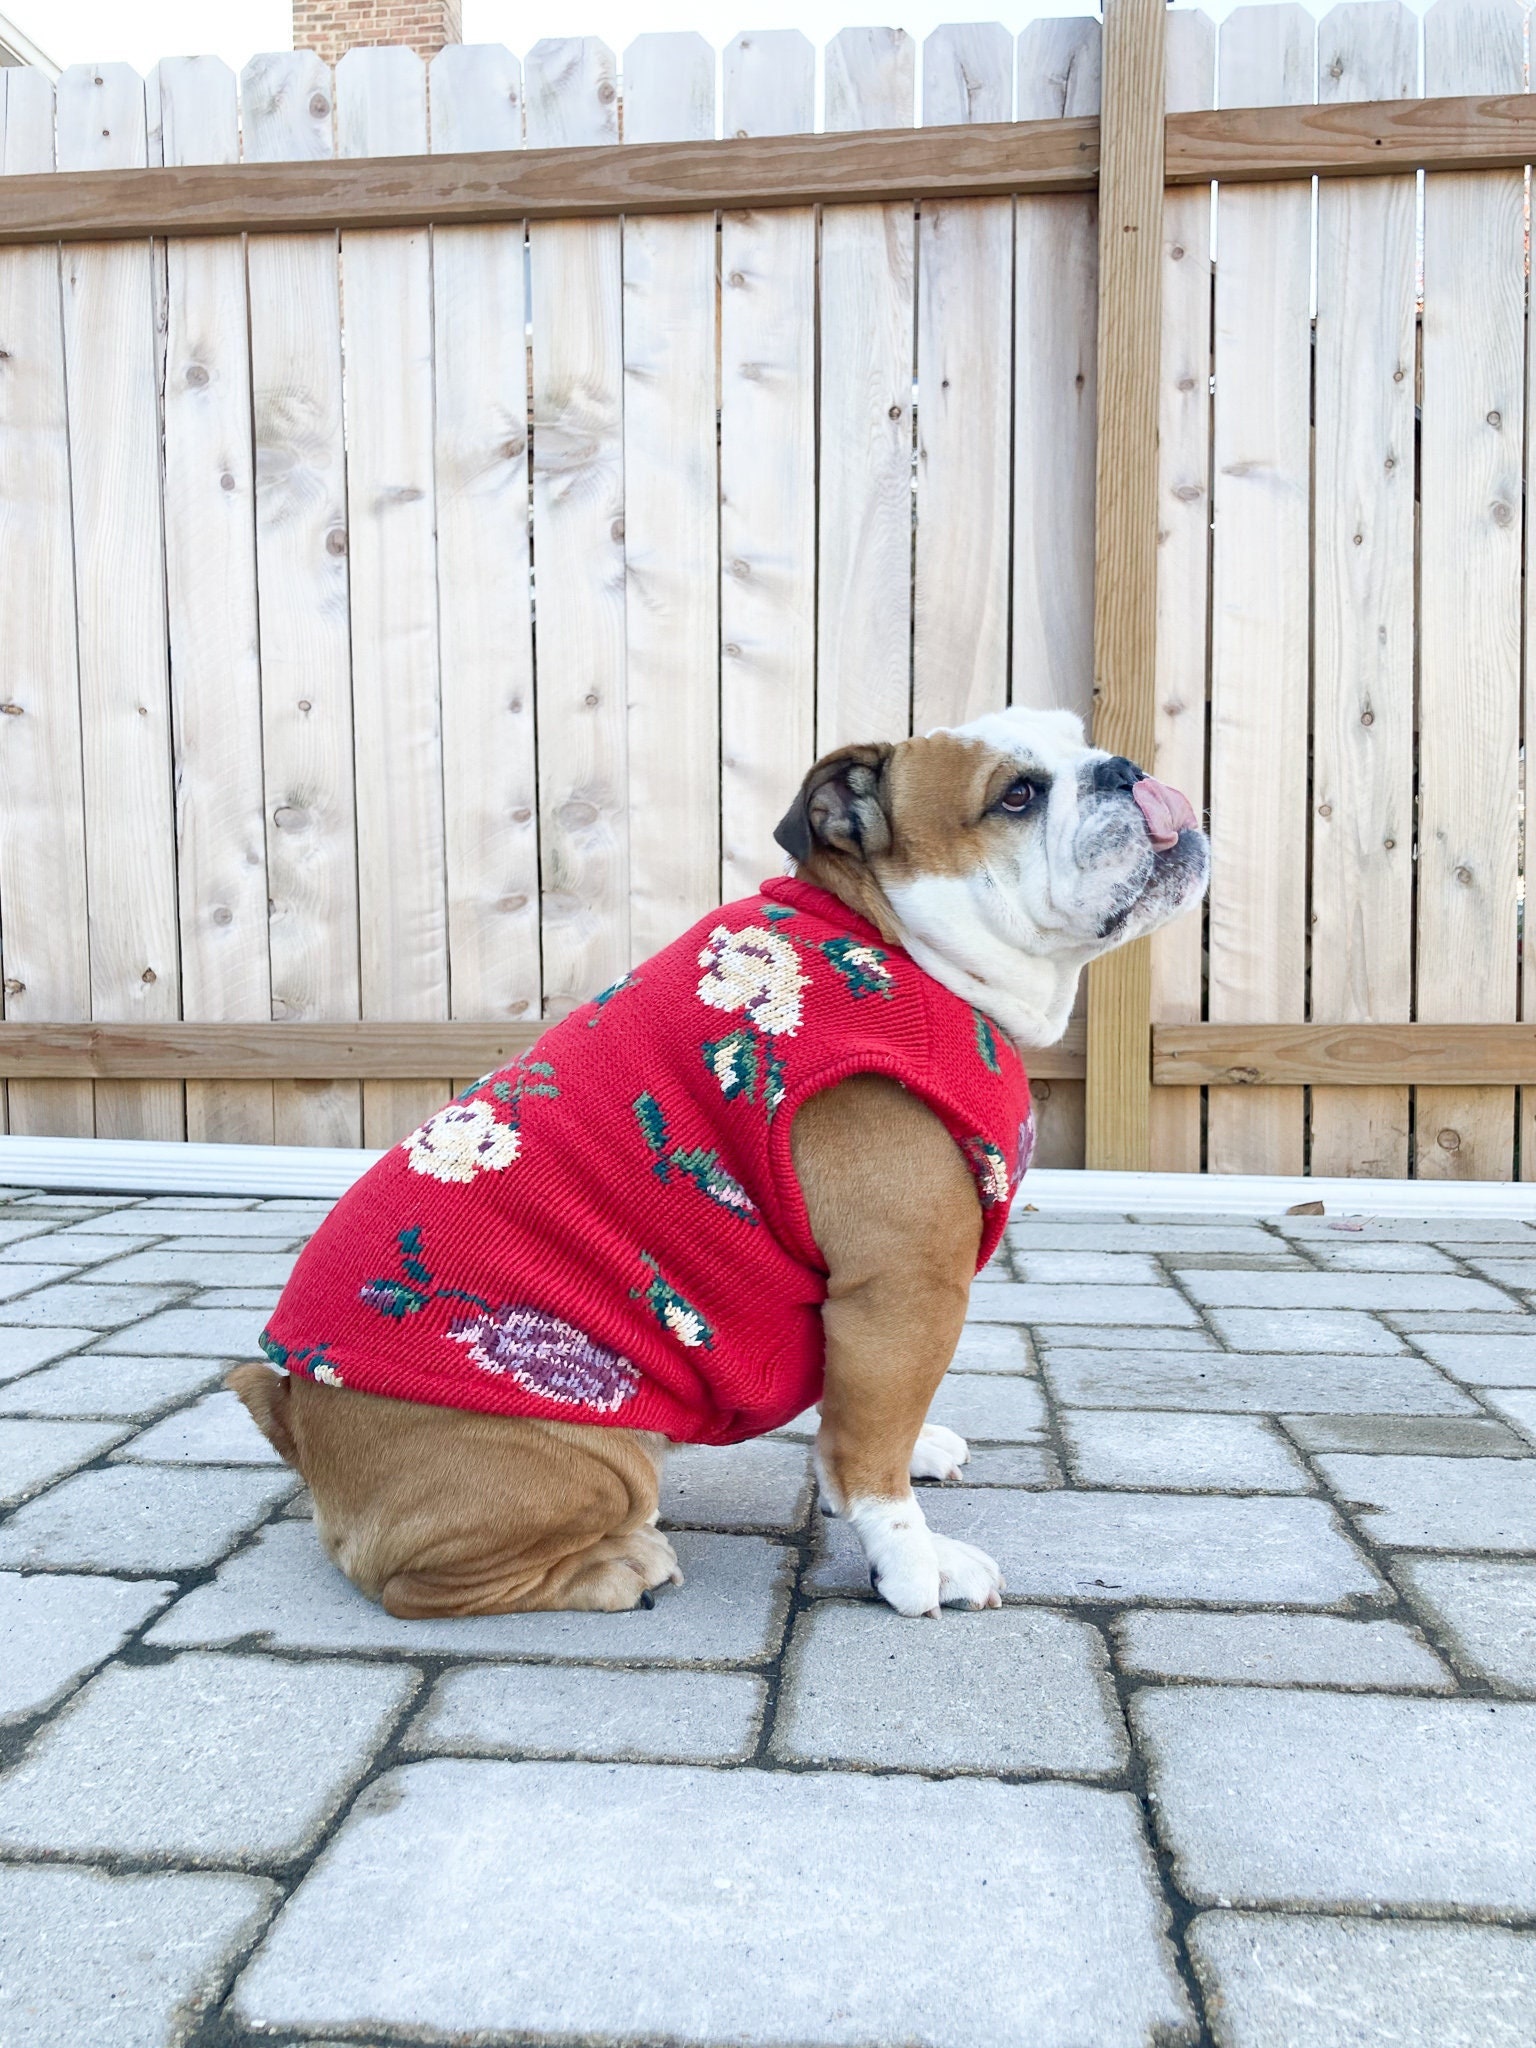 manteau chien bulldog anglais